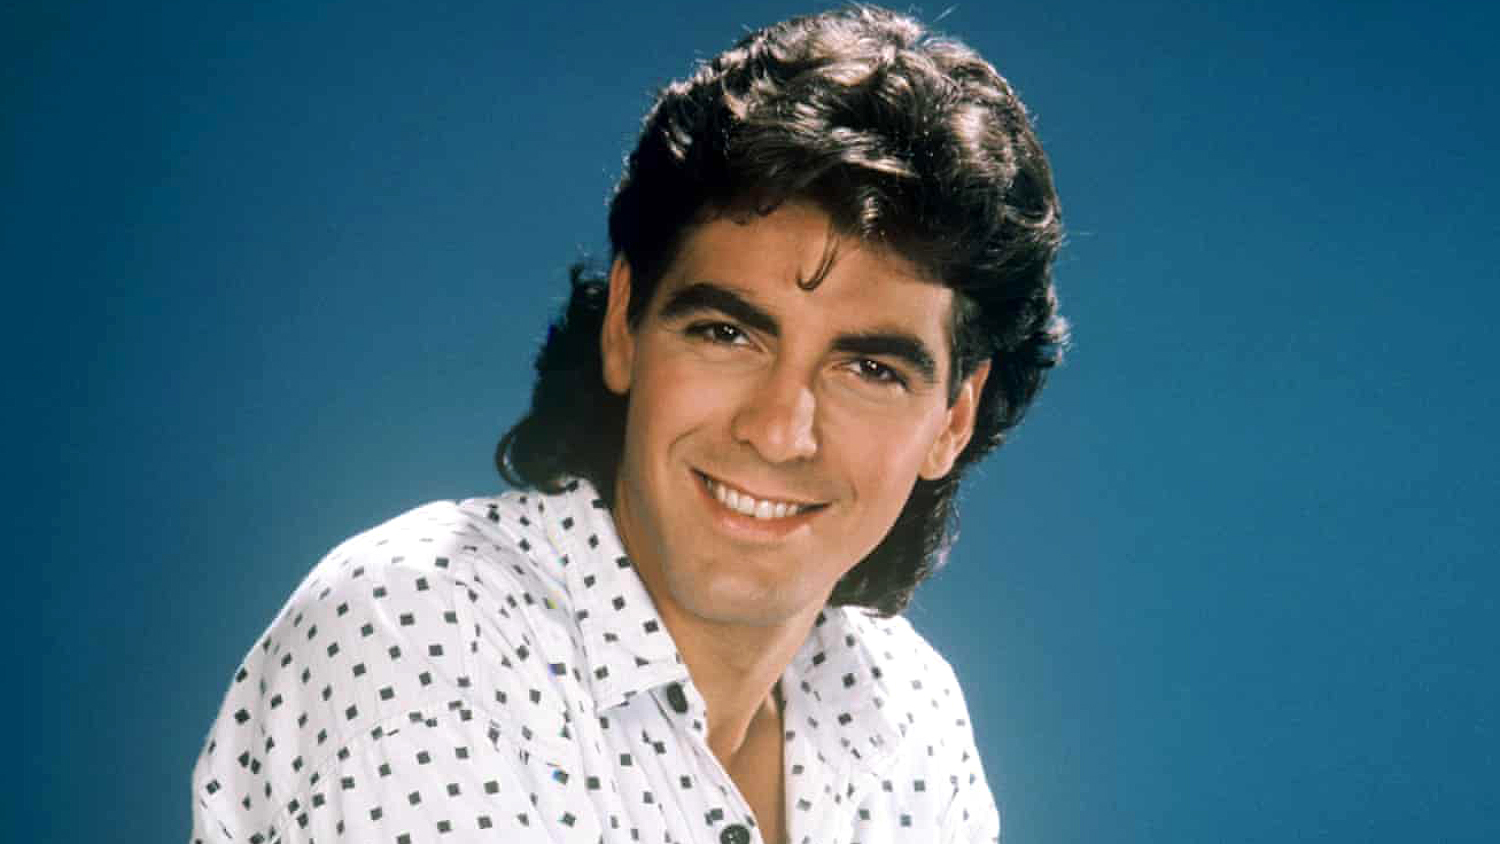 Джордж Клуни в сериале "Дни нашей жизни" (1979-1988)